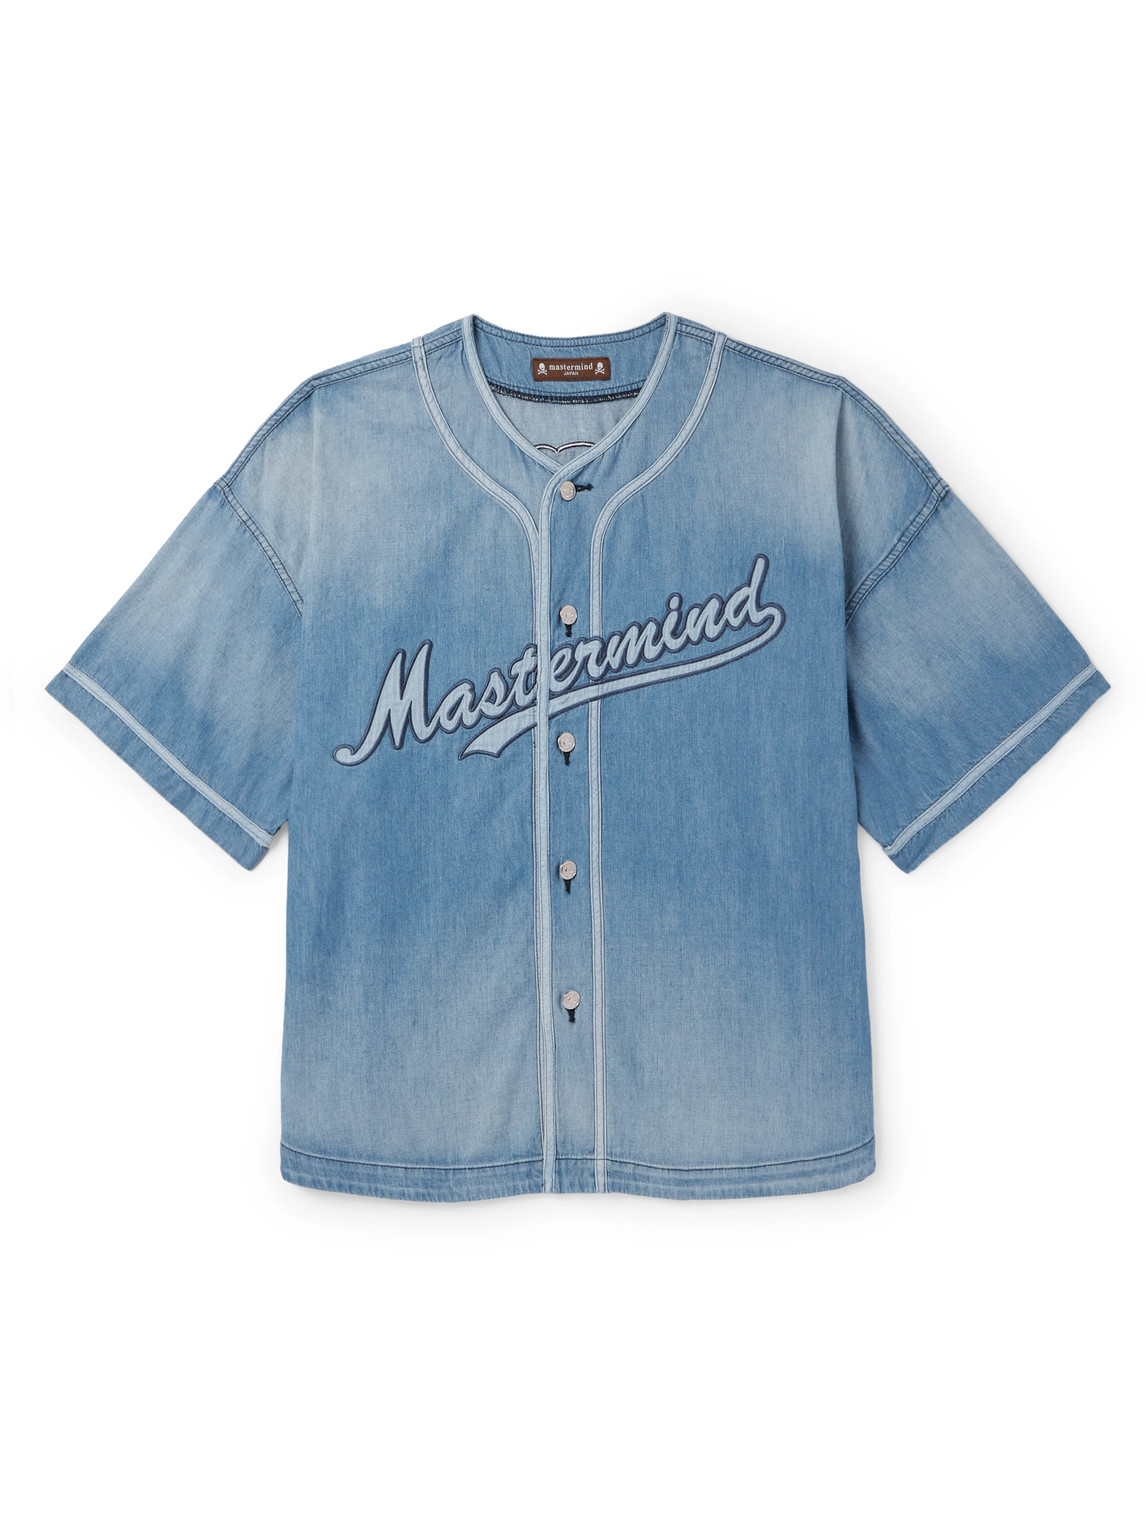 Mastermind Japan Blue Baseball Denim Shirt